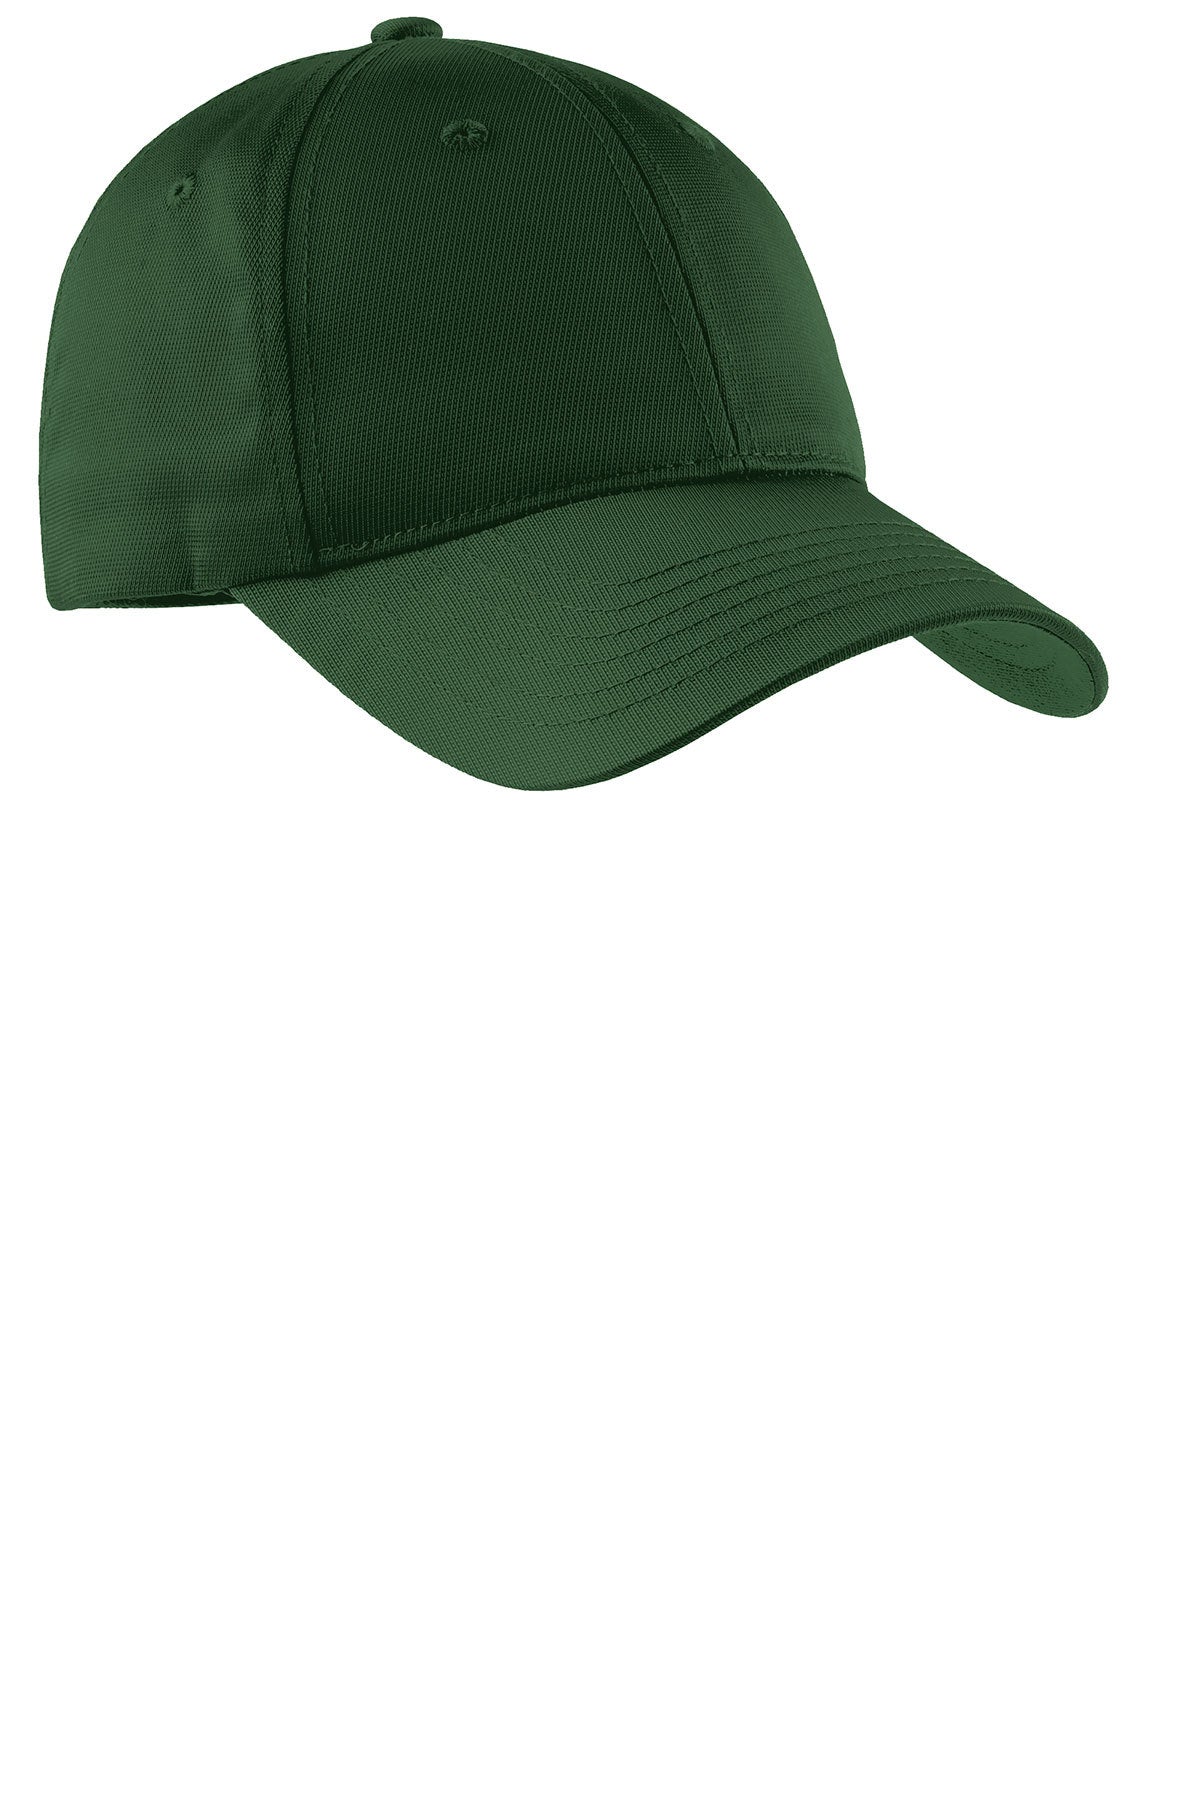 Sport-Tek Dry Zone Branded Nylon Caps, Forest Green